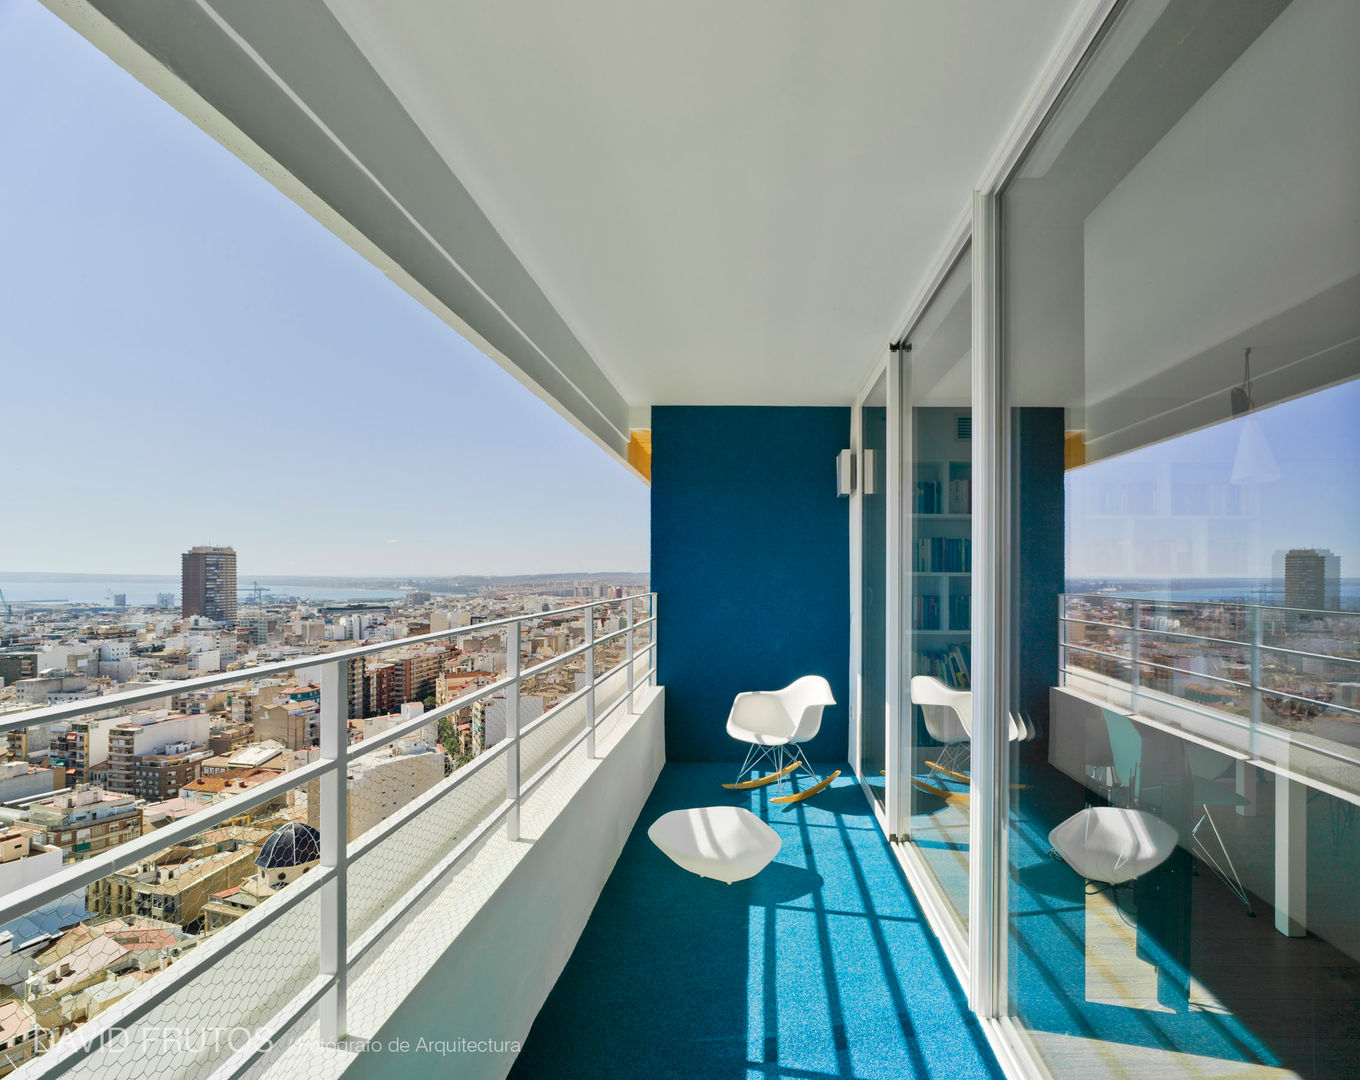 Un Pequeño piso en Alicante con Terraza y una vista al mar ¡espectacular!, FLAP STUDIO FLAP STUDIO Rumah Modern